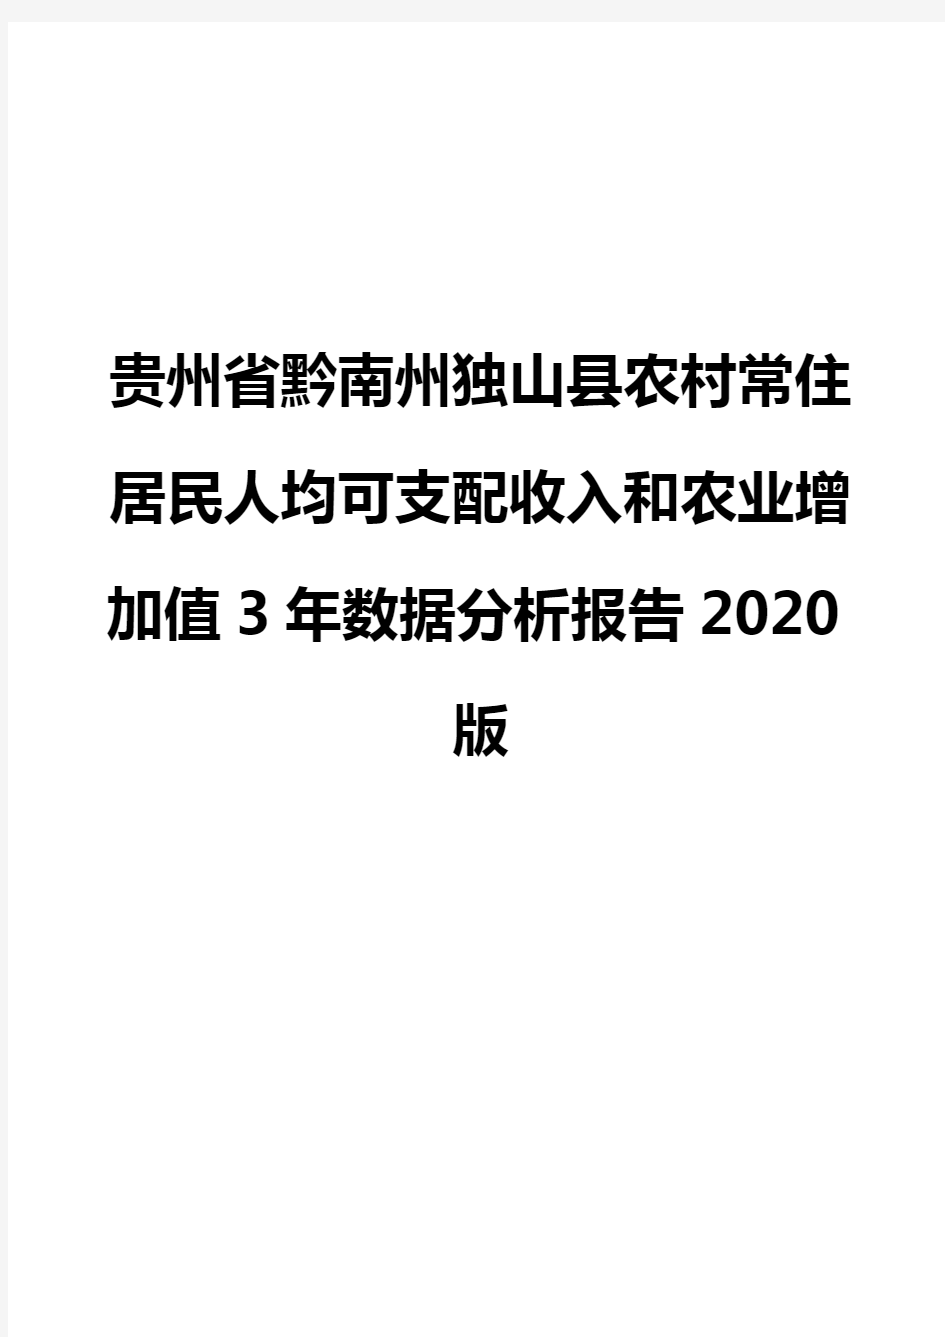 贵州省黔南州独山县农村常住居民人均可支配收入和农业增加值3年数据分析报告2020版